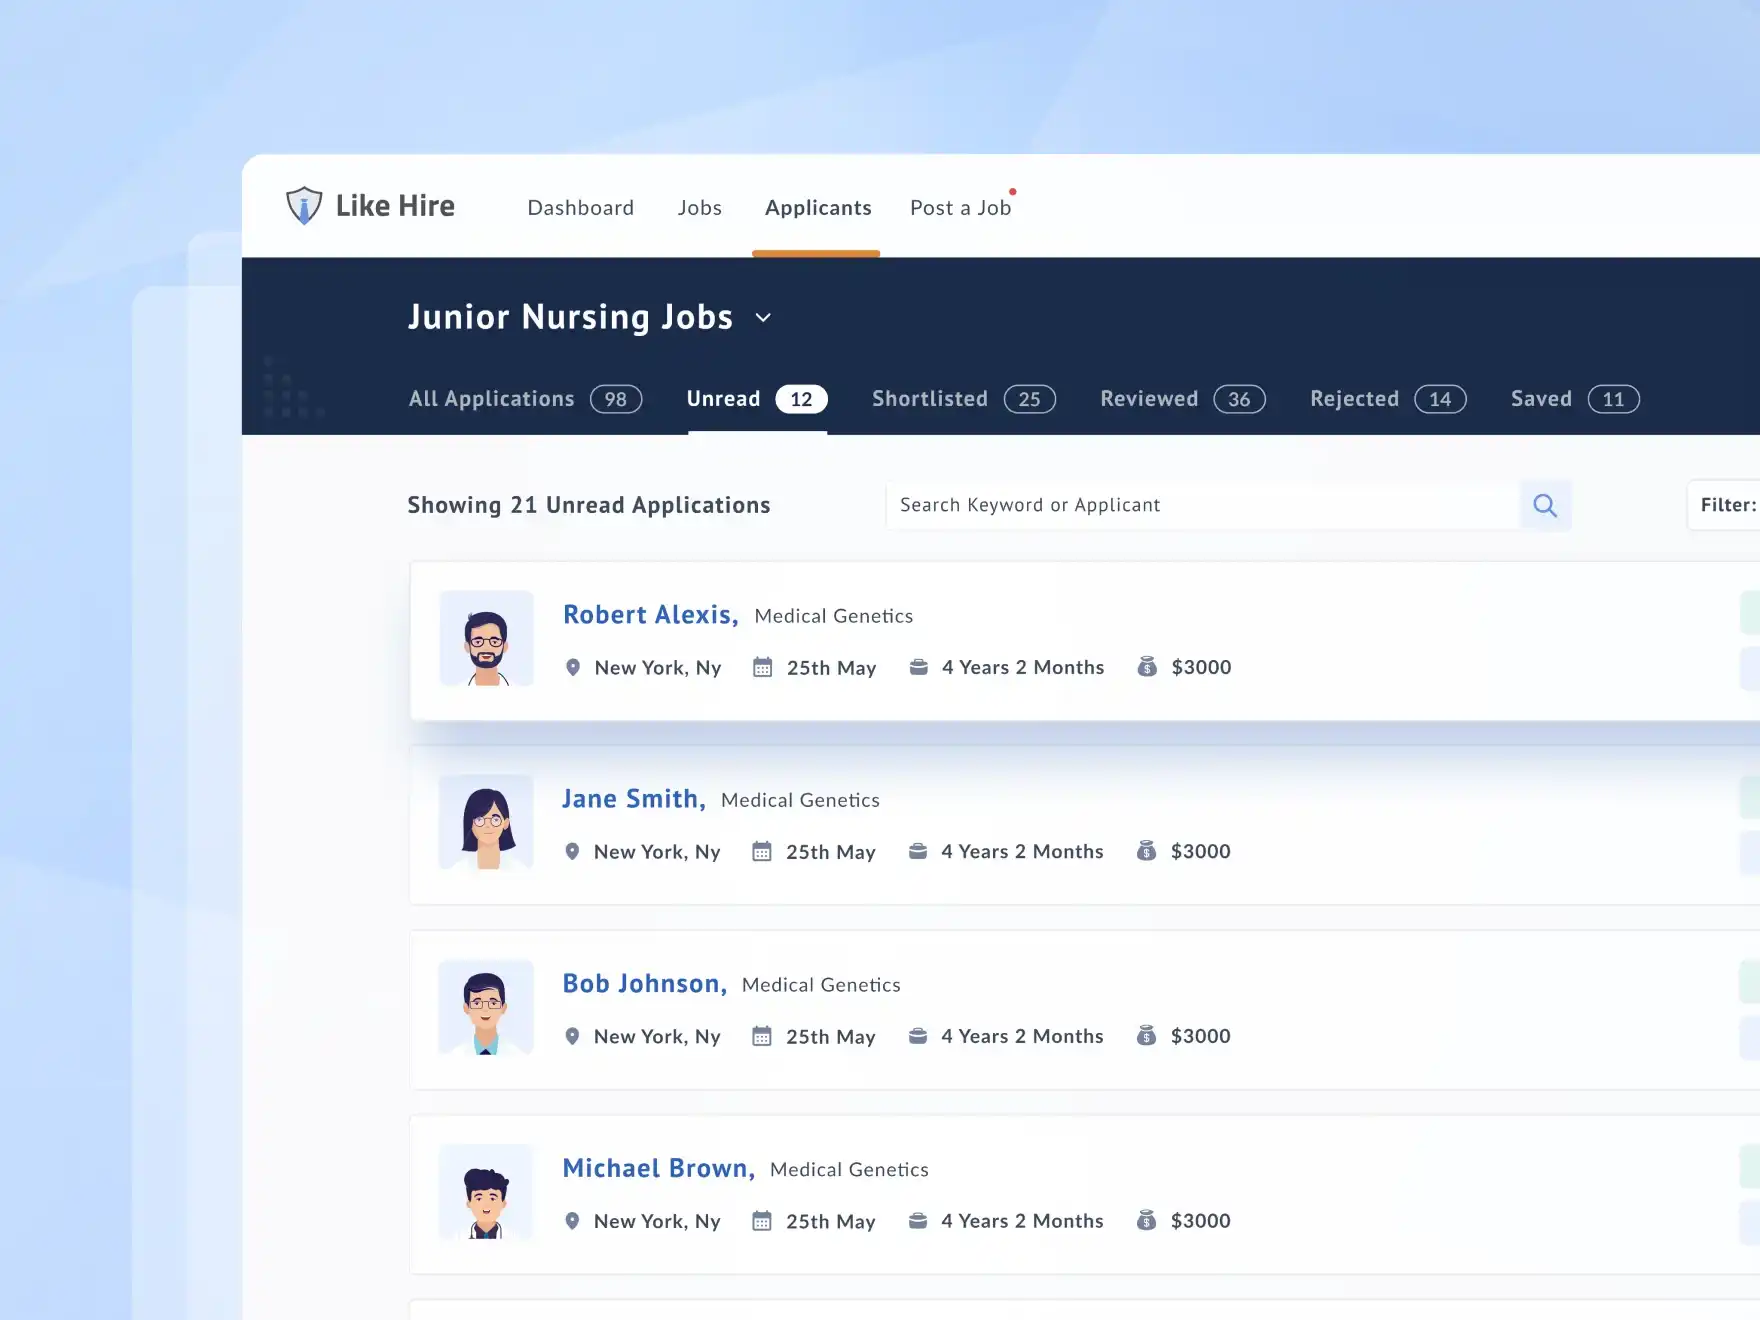 UI Design of the Job Applicants Screen